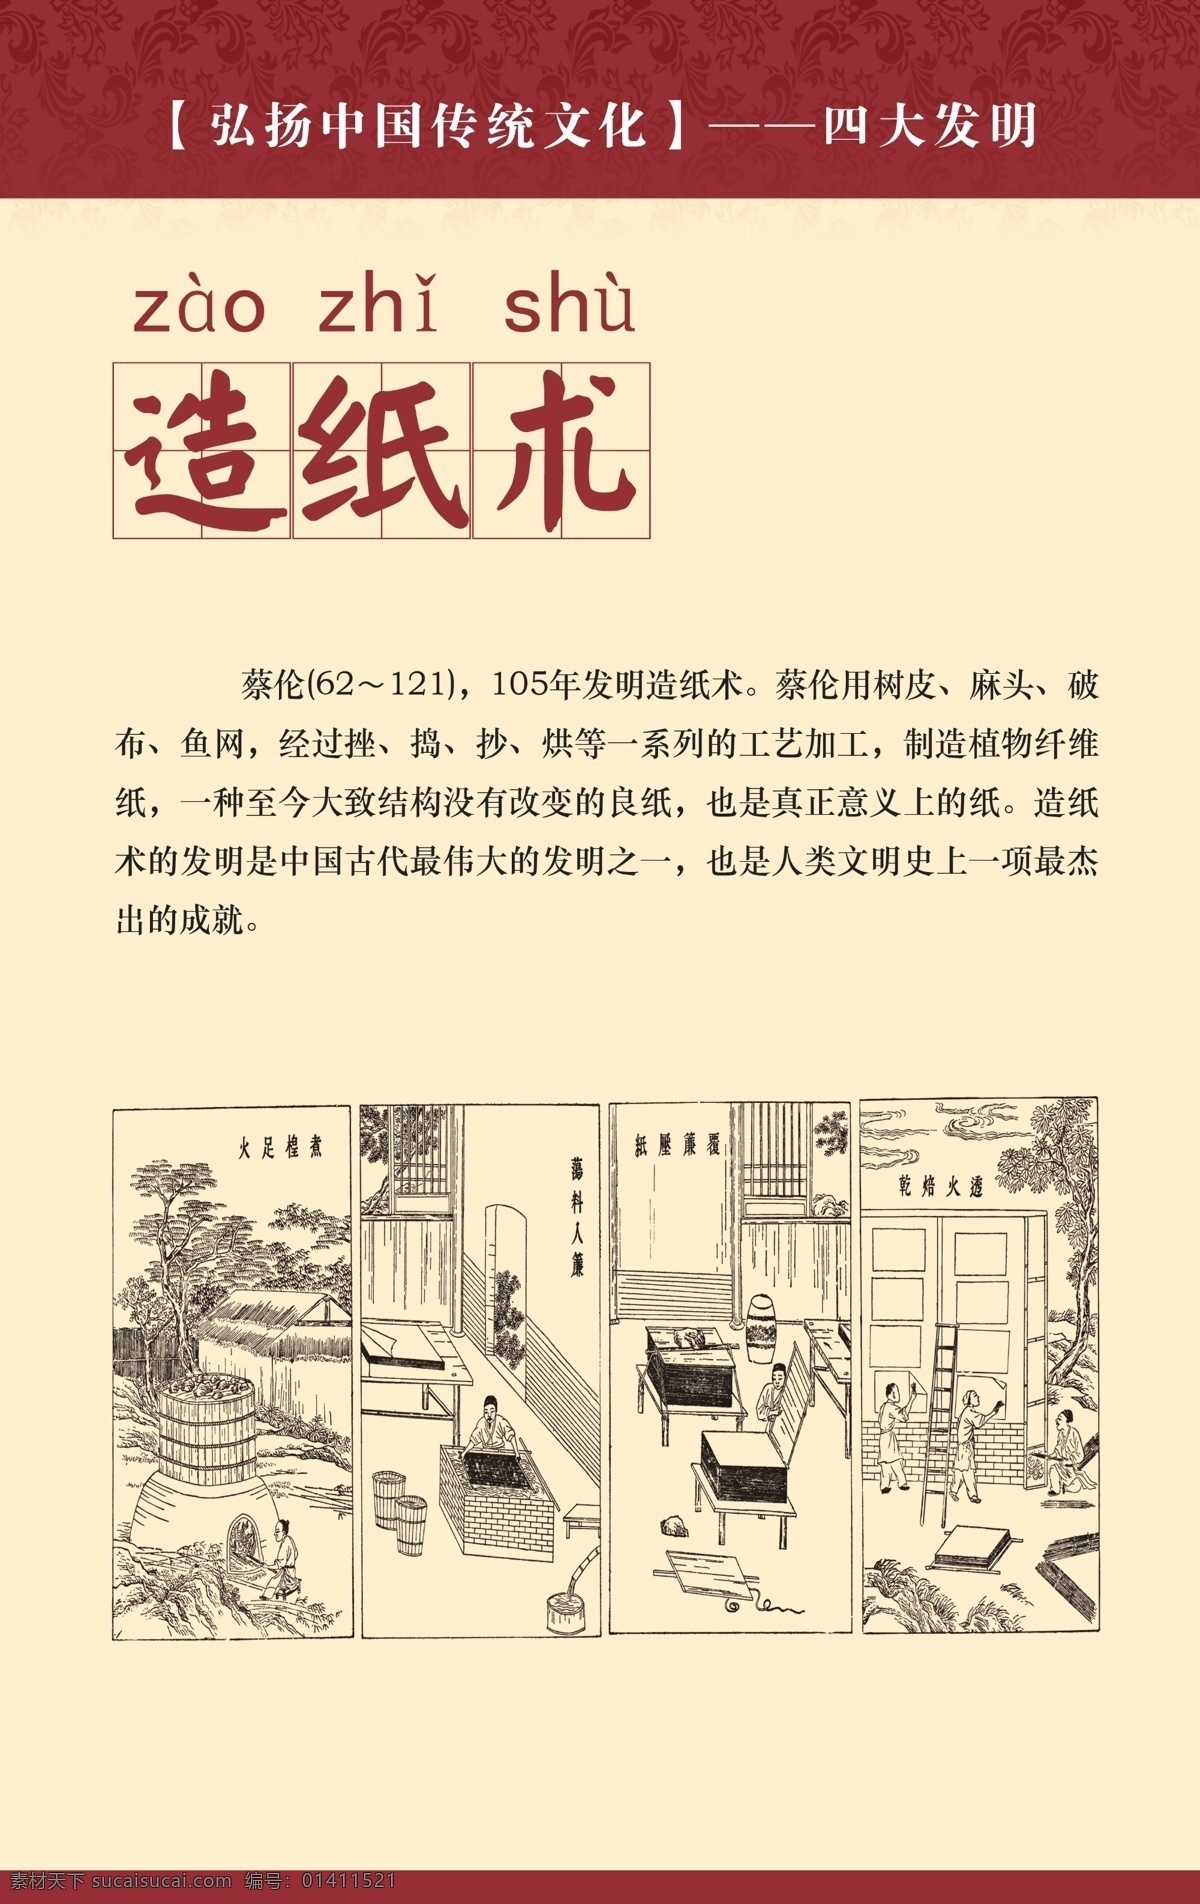 四大发明 造纸术 中国传统文化 造纸术简介 中国风 校园文化 走廊文化 中国文化